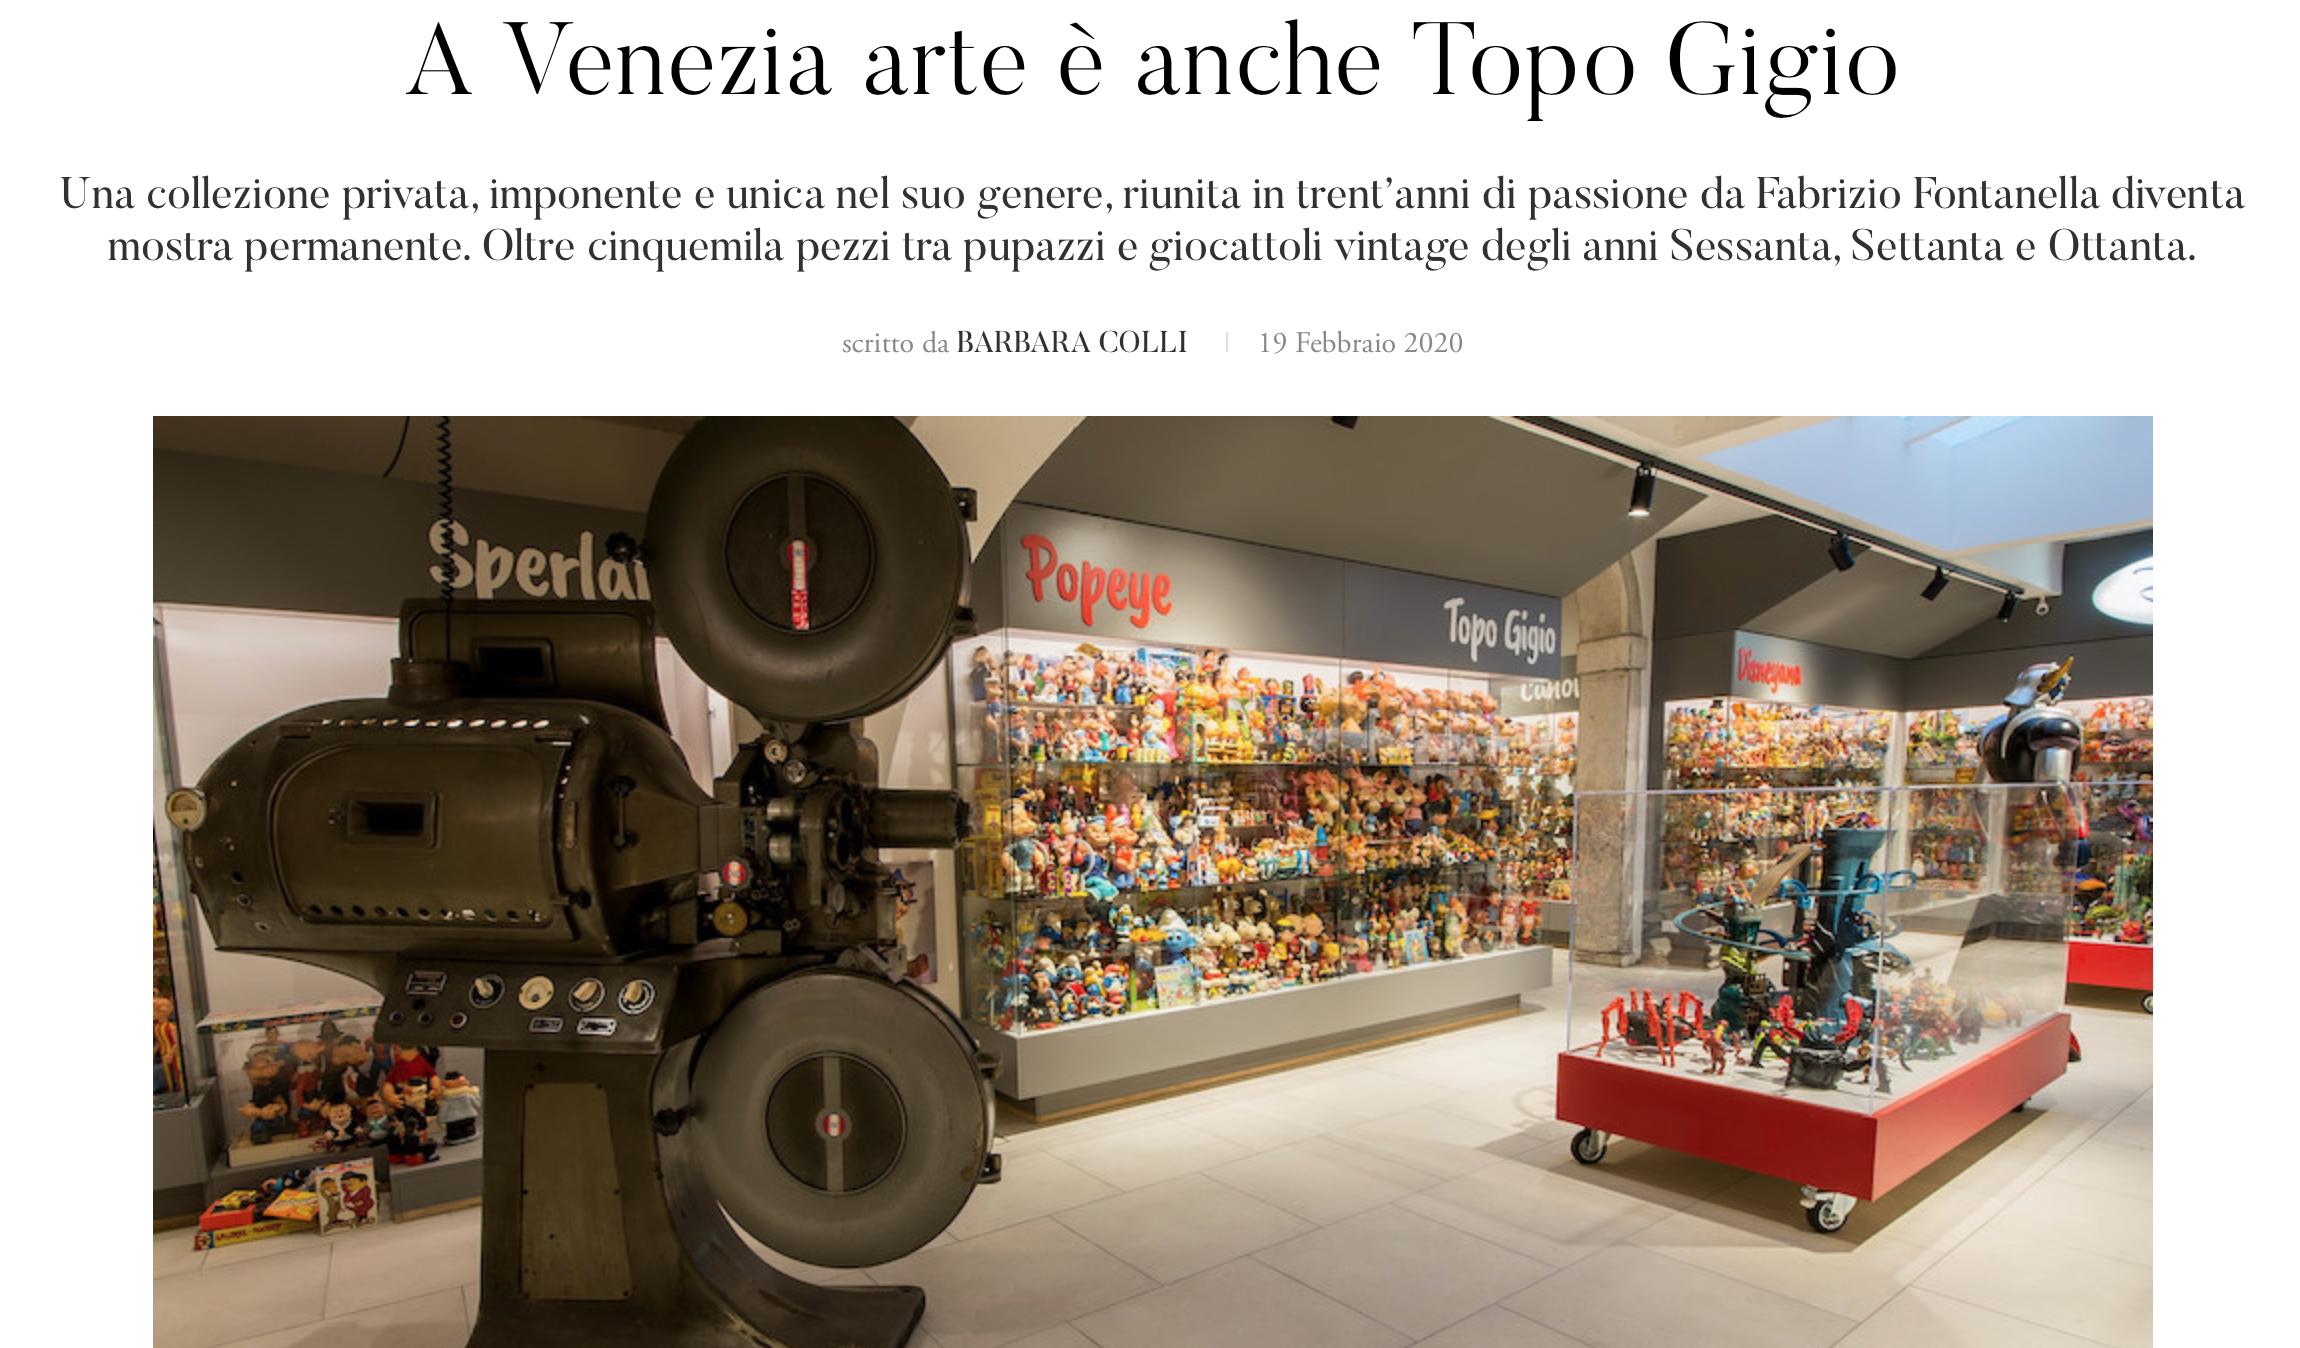 Art in Venice is Topo Gigio too